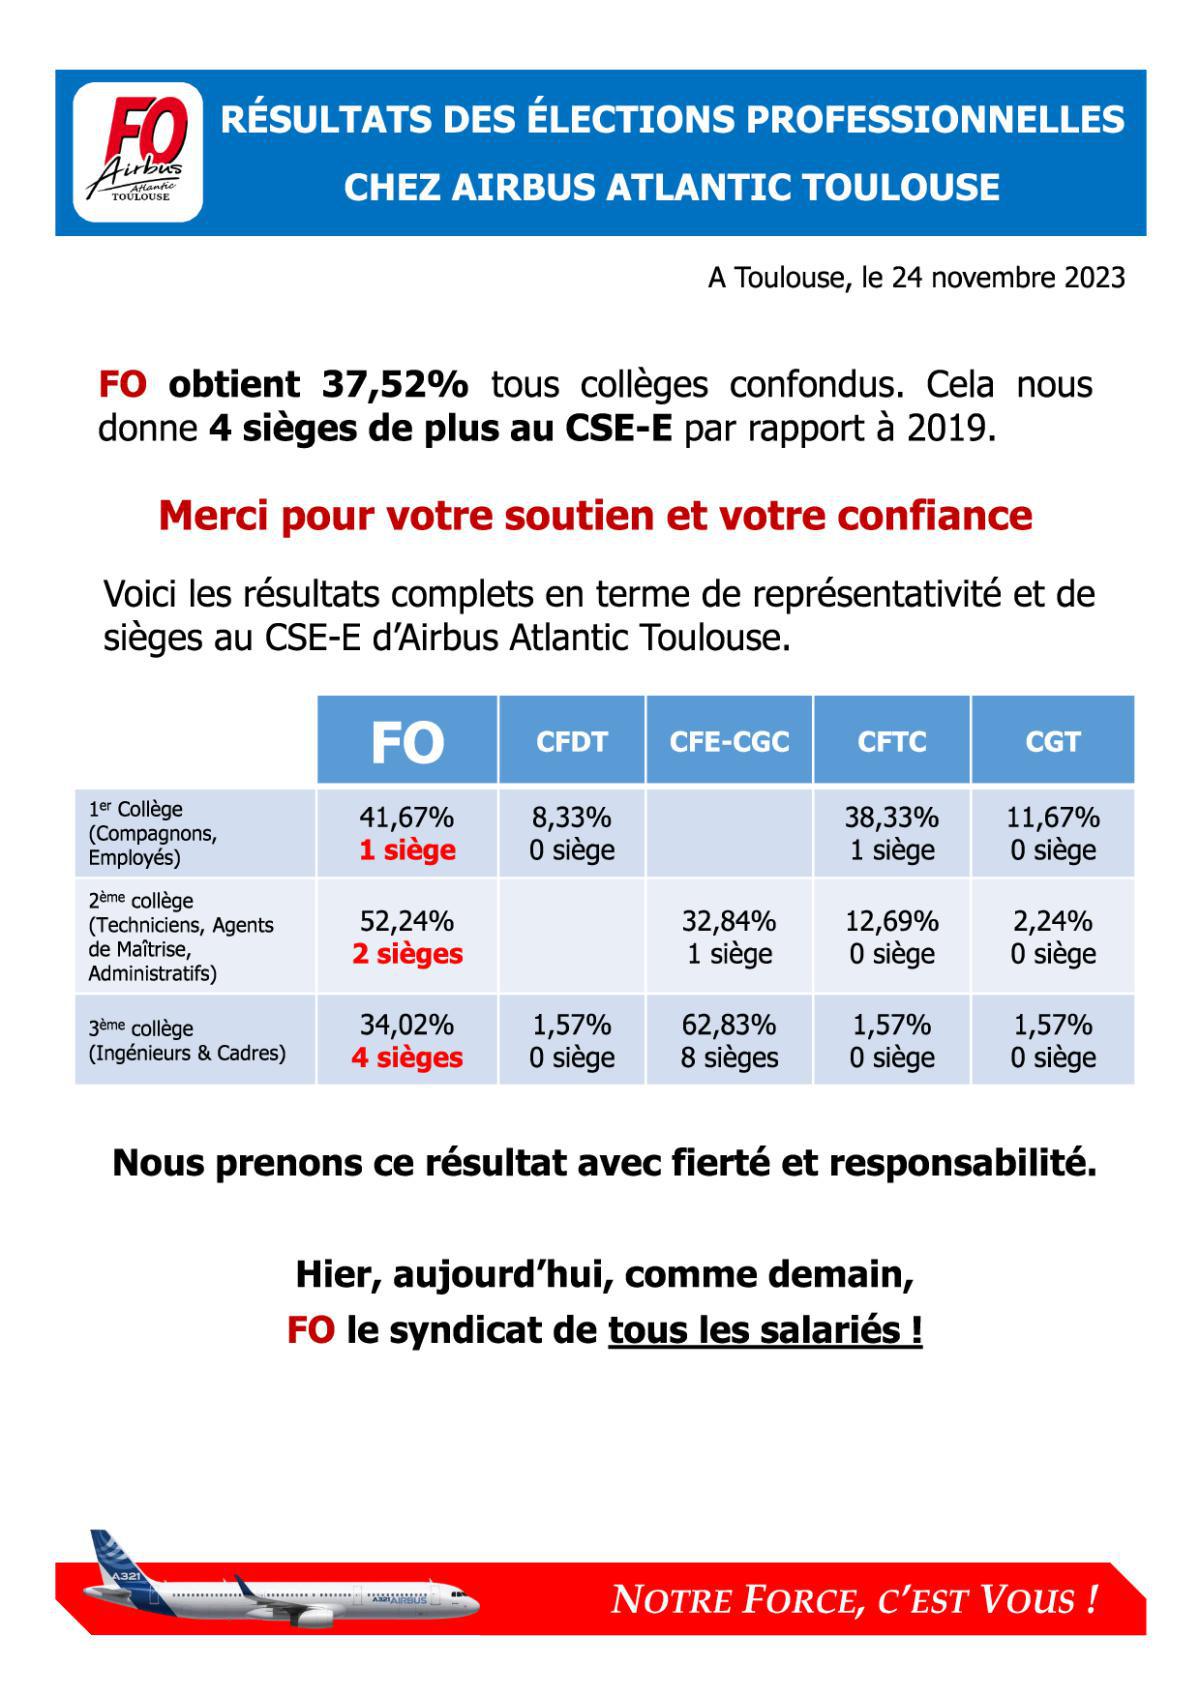 Résultats des élections professionnelles chez Airbus Atlantic Toulouse